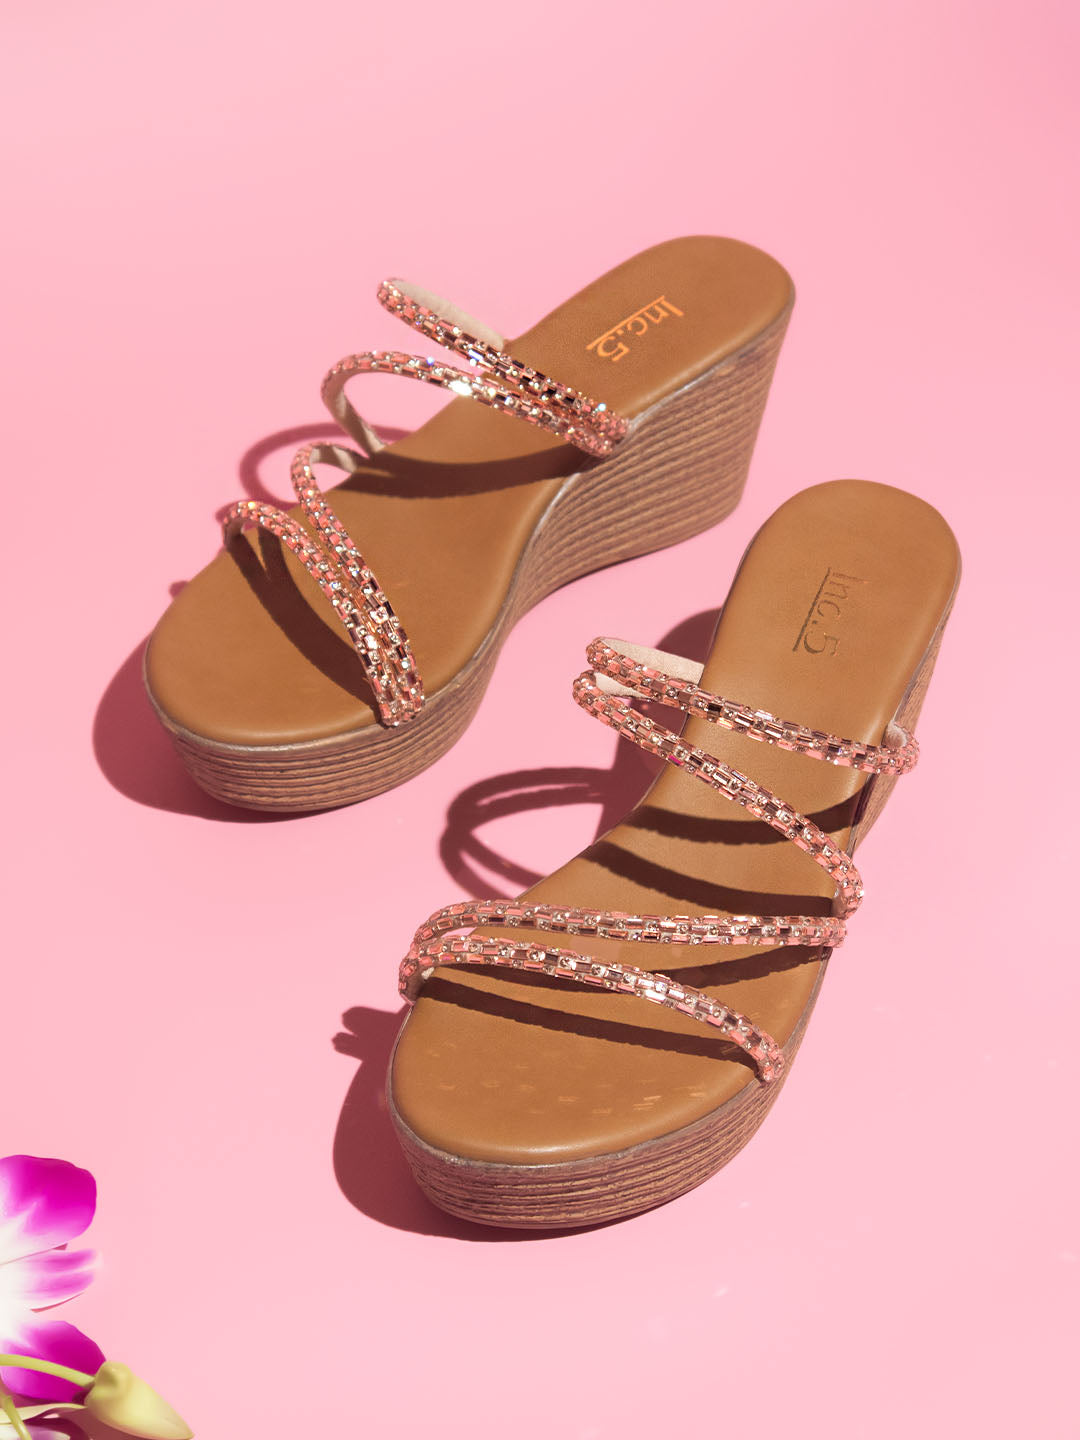 Buy Now Women Rose Gold Textured Block Heels Sandals – Inc5 Shoes